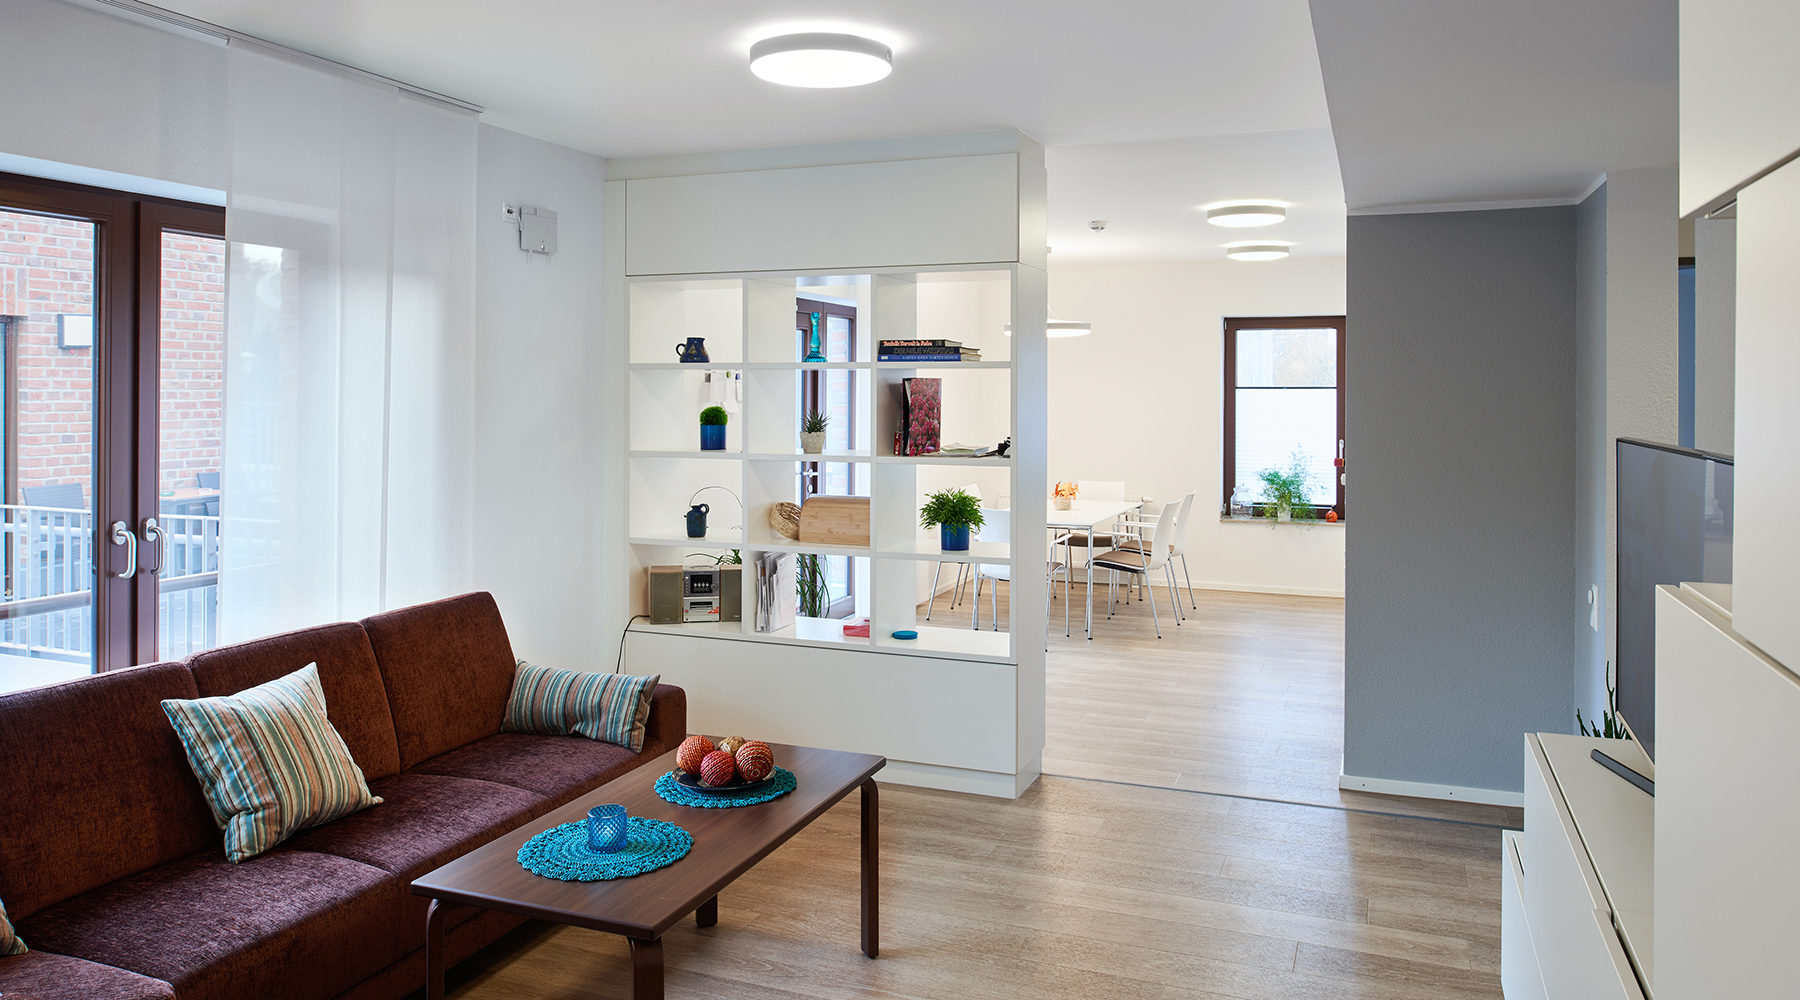 Moderner, offener Wohnbereich mit hellen Möbeln, aber dunkler Couchgarnitur.